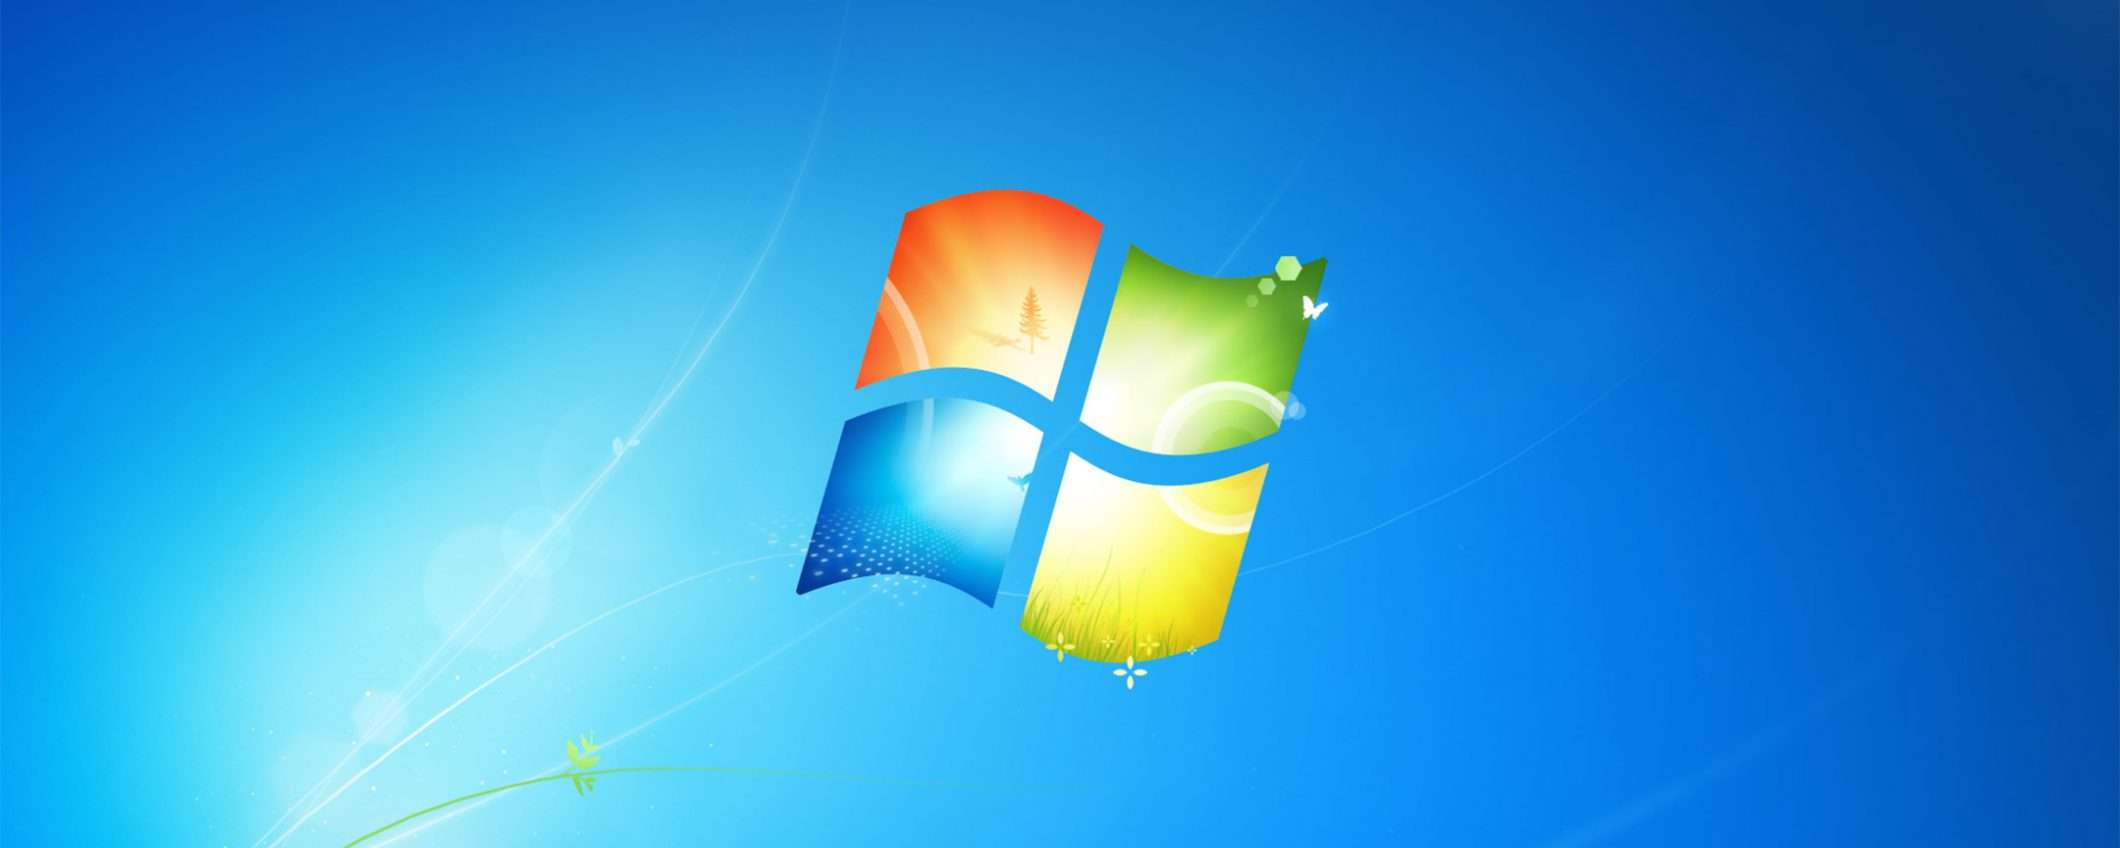 Windows 7, questa volta è davvero finita